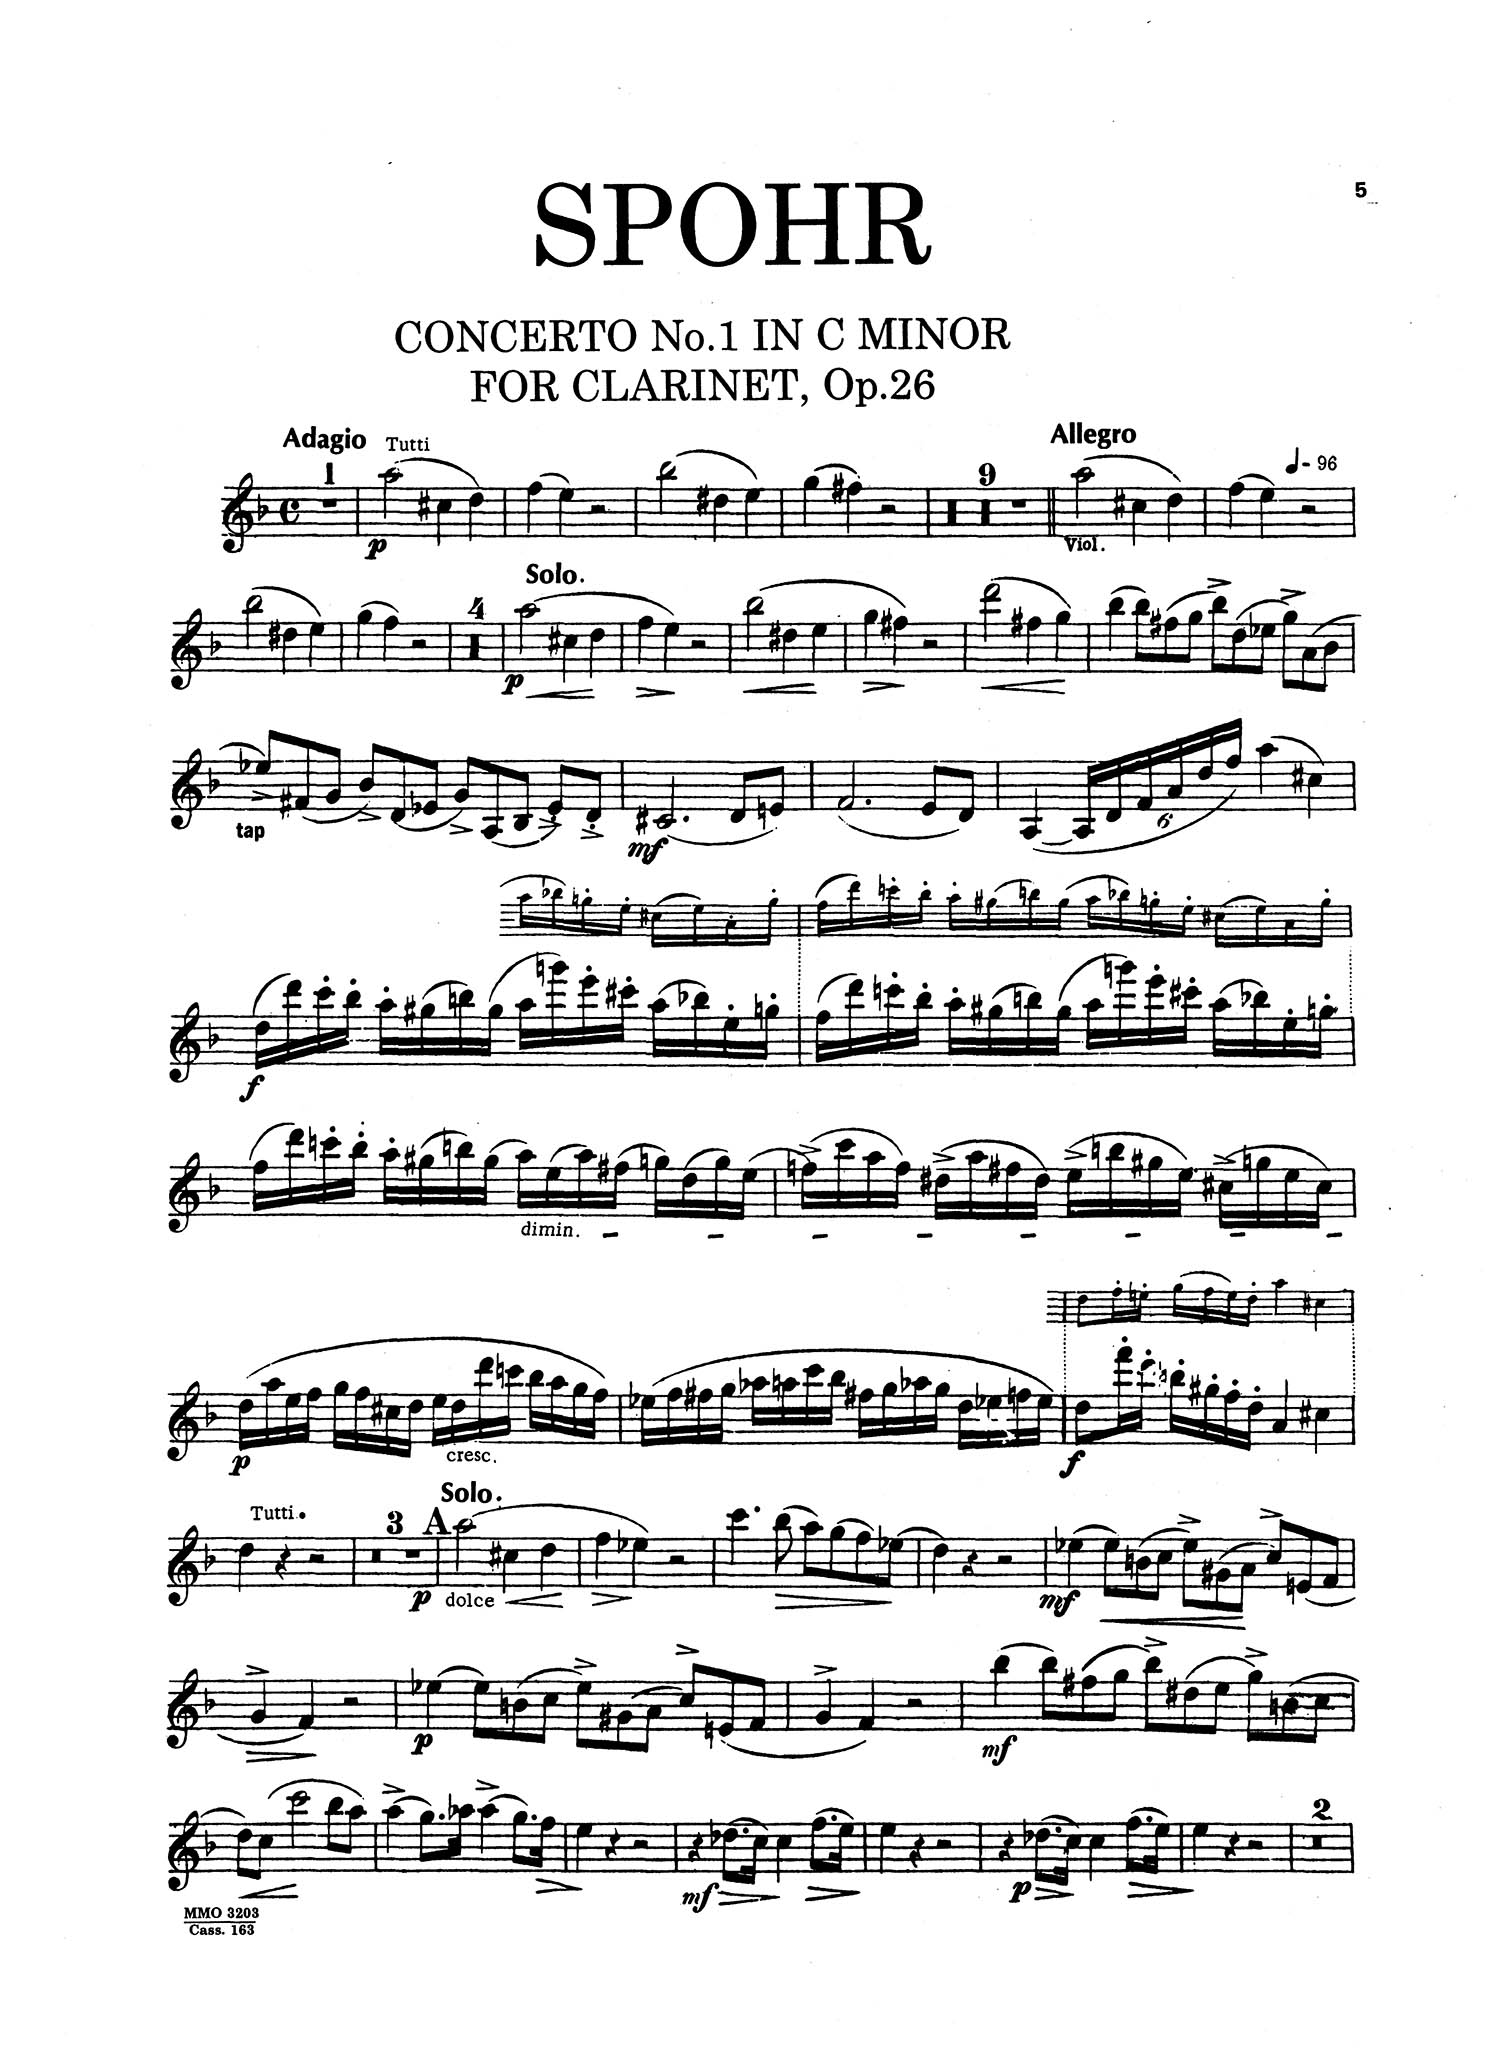 Clarinet Concerto No. 1 in C Minor, Op. 26 - Movement 1